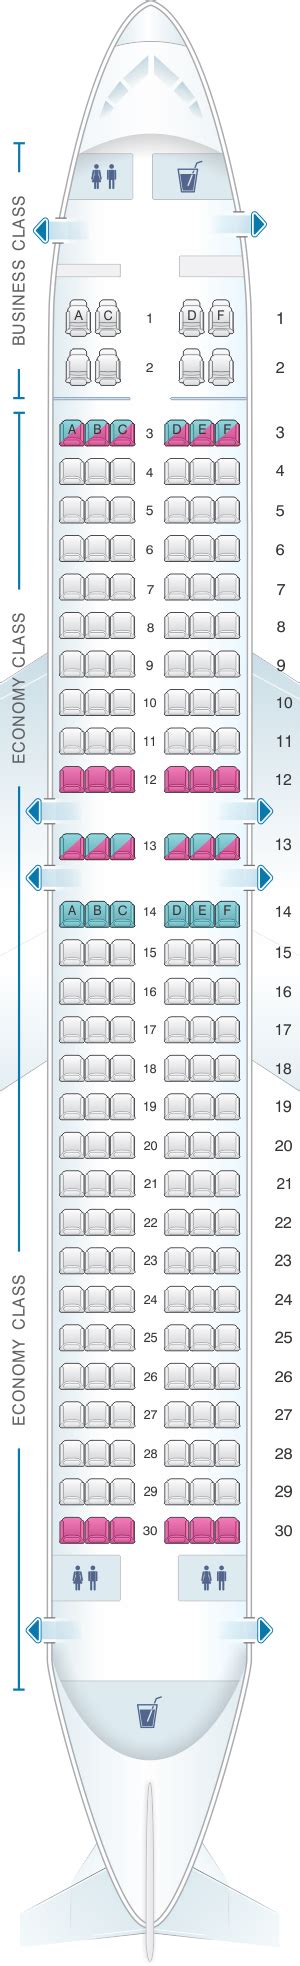 virgin boeing 737 800 seating plan